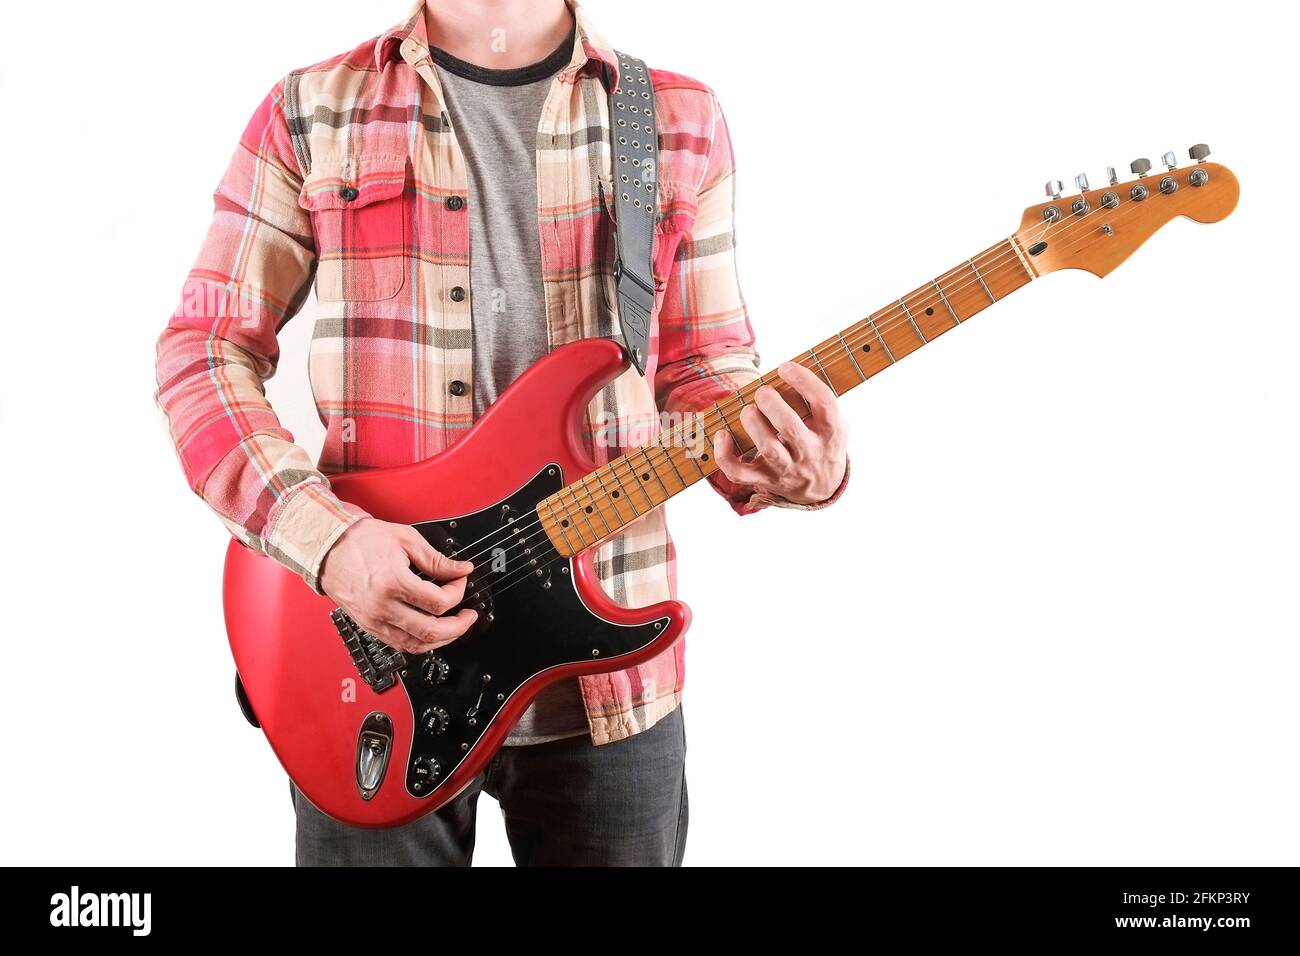 Chitarrista rock in camicia a quadri a scacchi che suona una chitarra elettrica candy mela rossa con bobina singola, collo d'acero e pickguard nero. Uomo che tiene musica inst Foto Stock